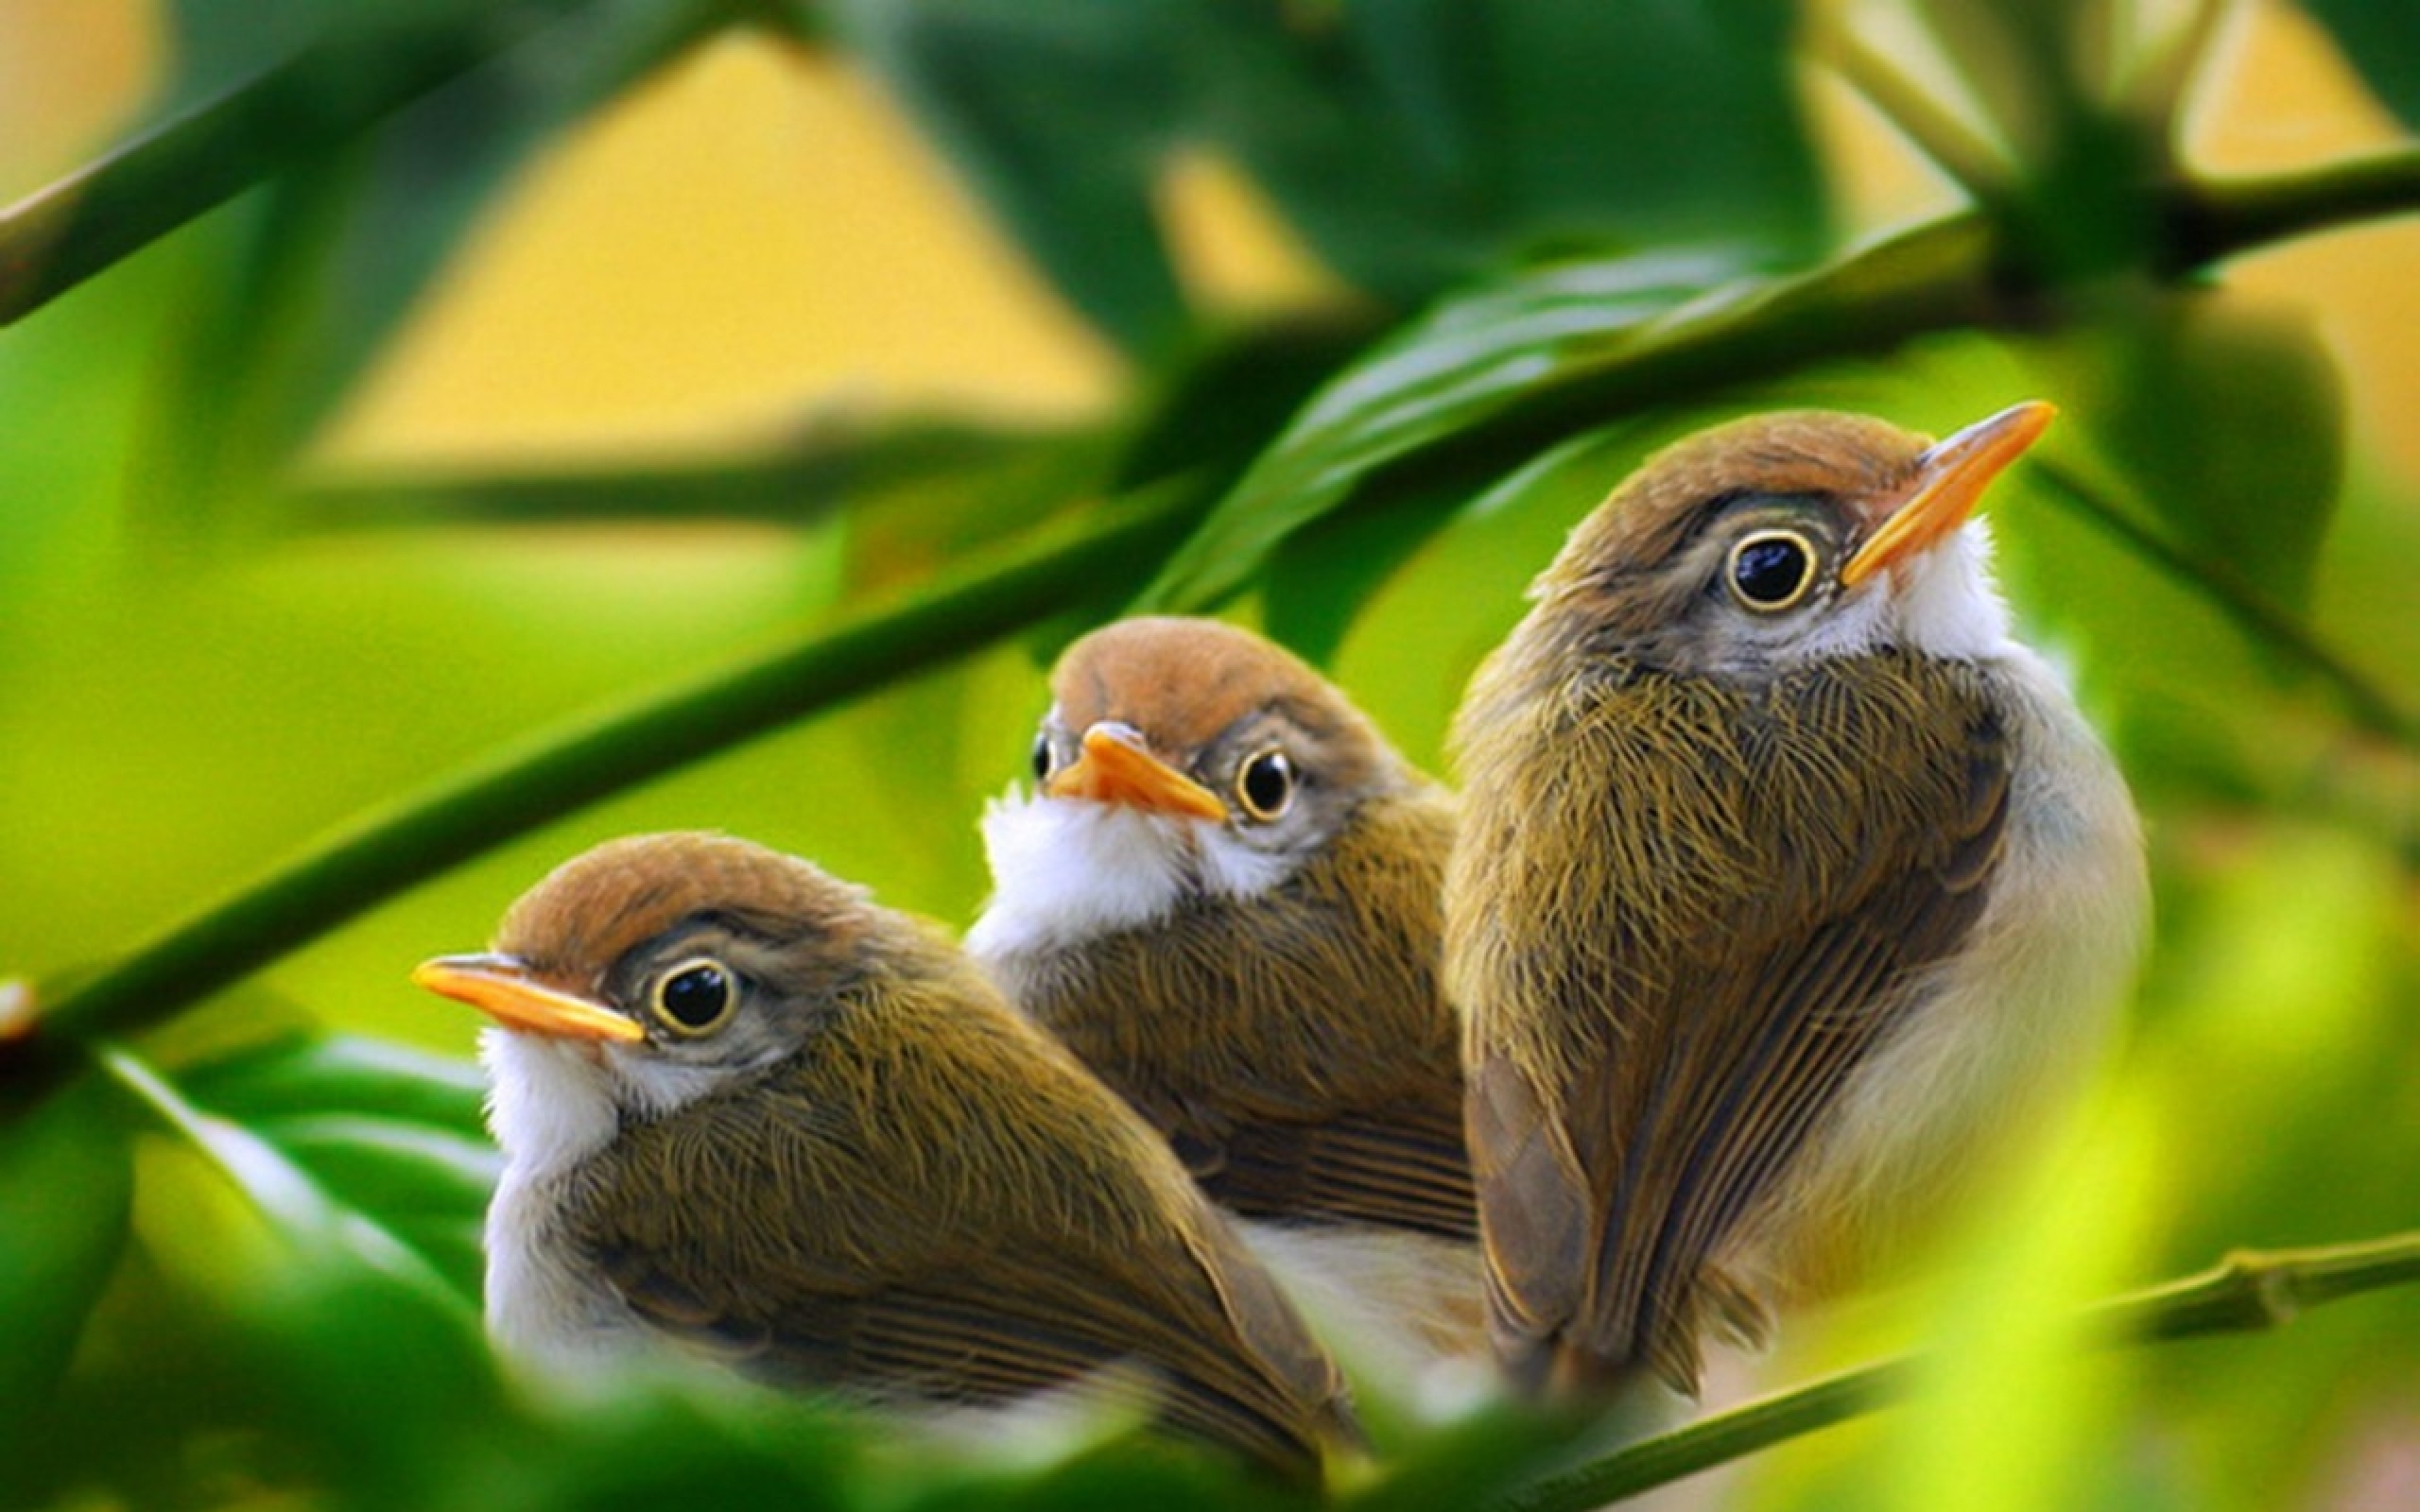 Descarga gratuita de fondo de pantalla para móvil de Ave, Aves, Animales.